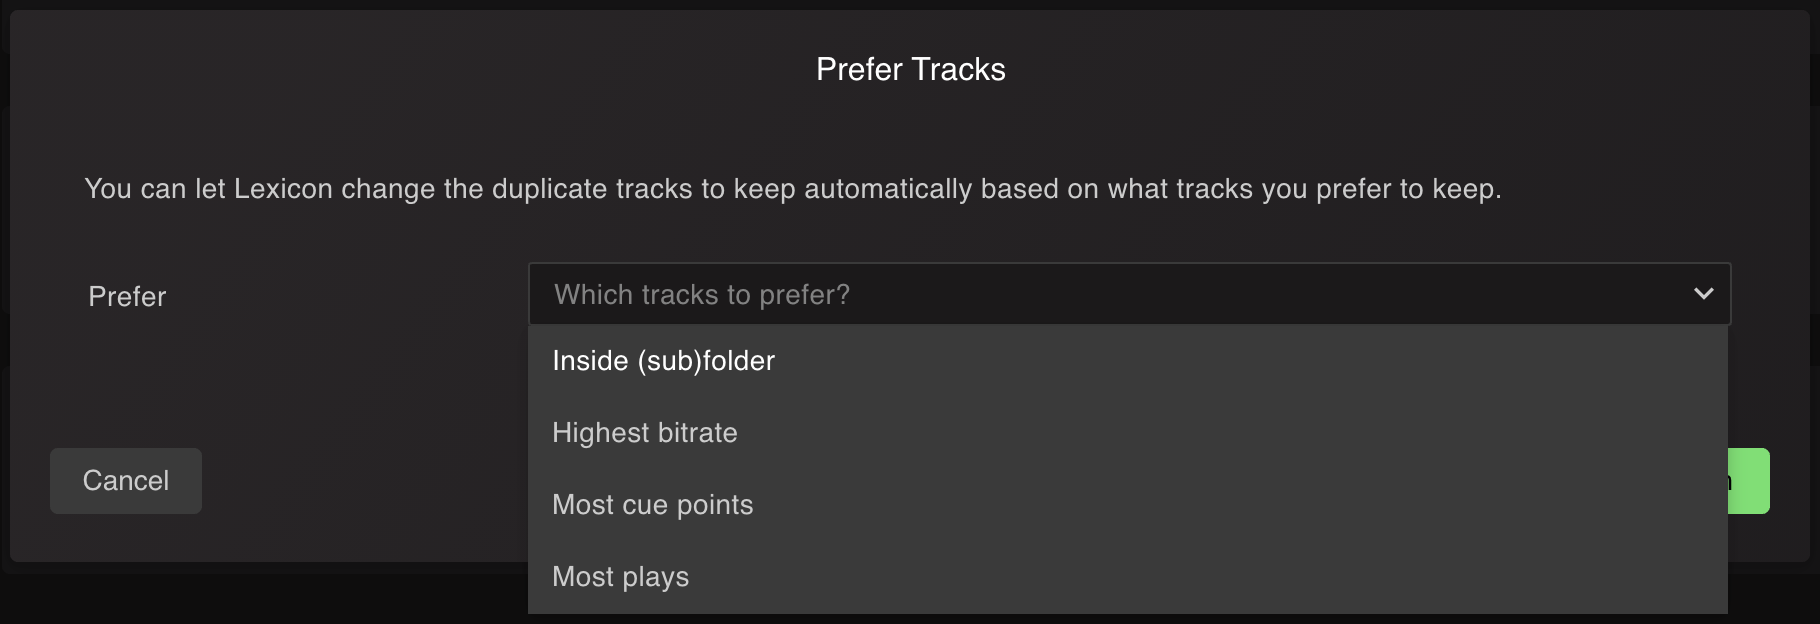 Prefer tracks